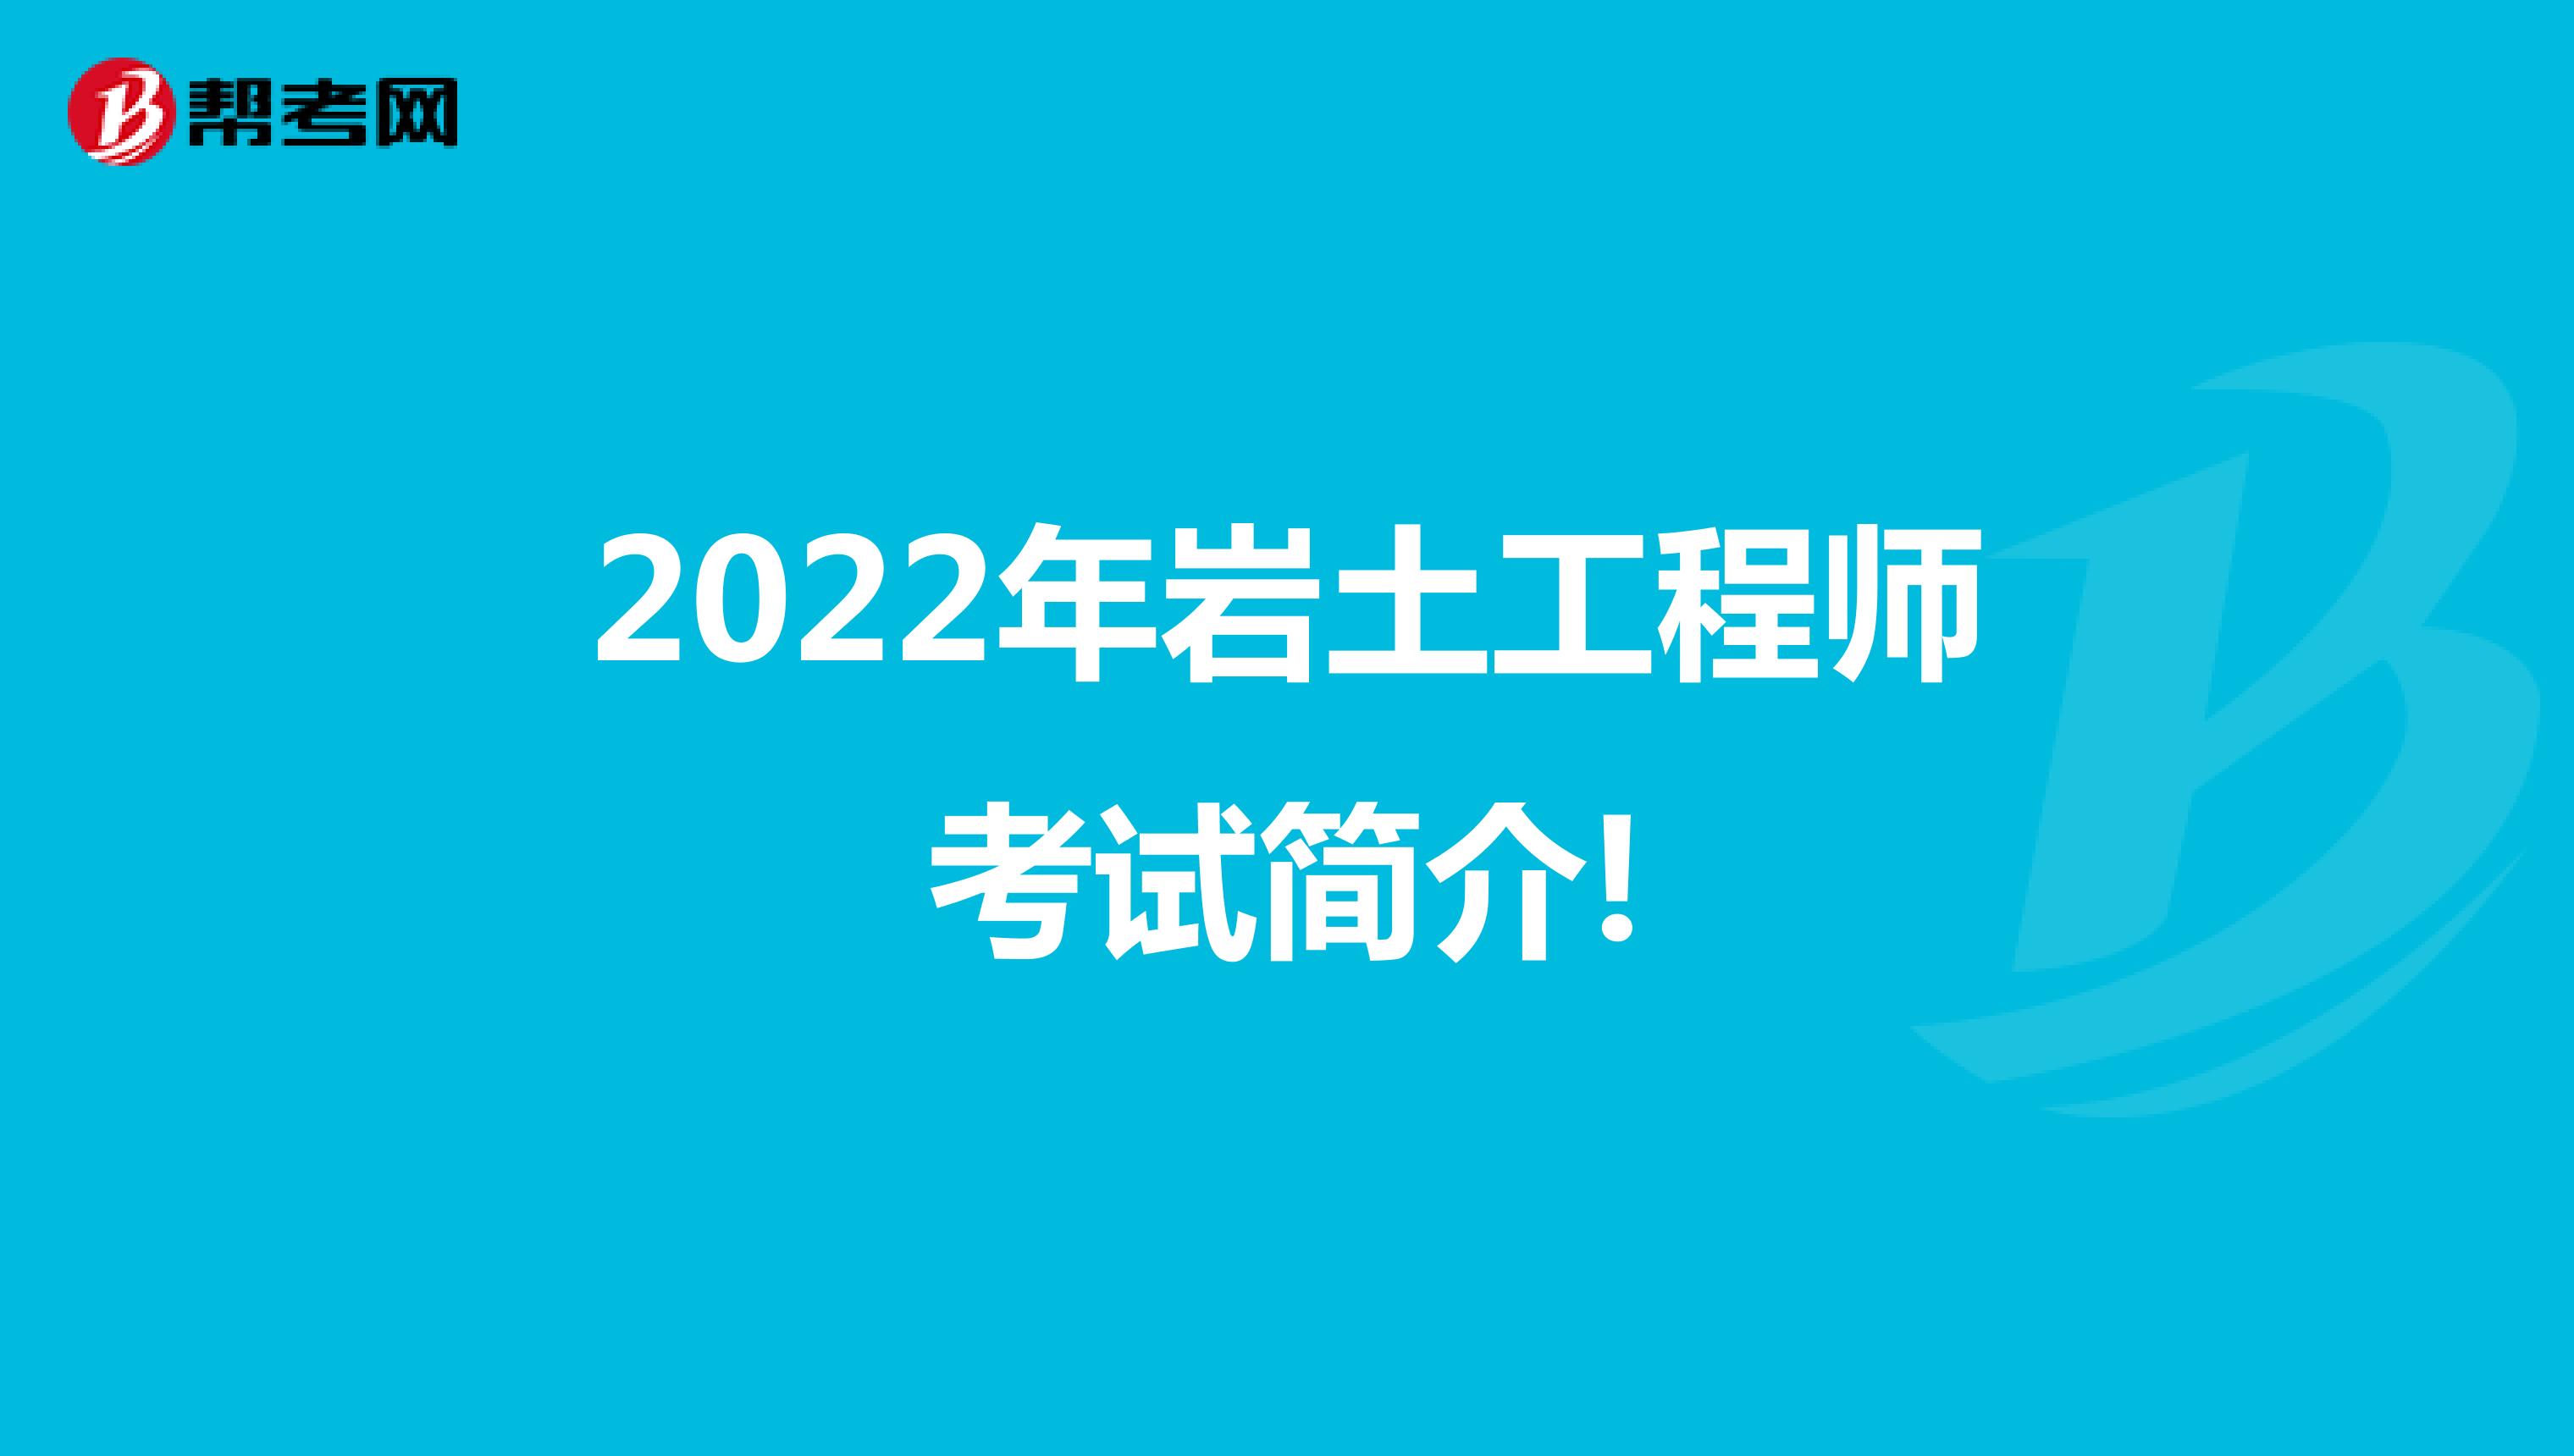 2022年岩土工程师考试简介!